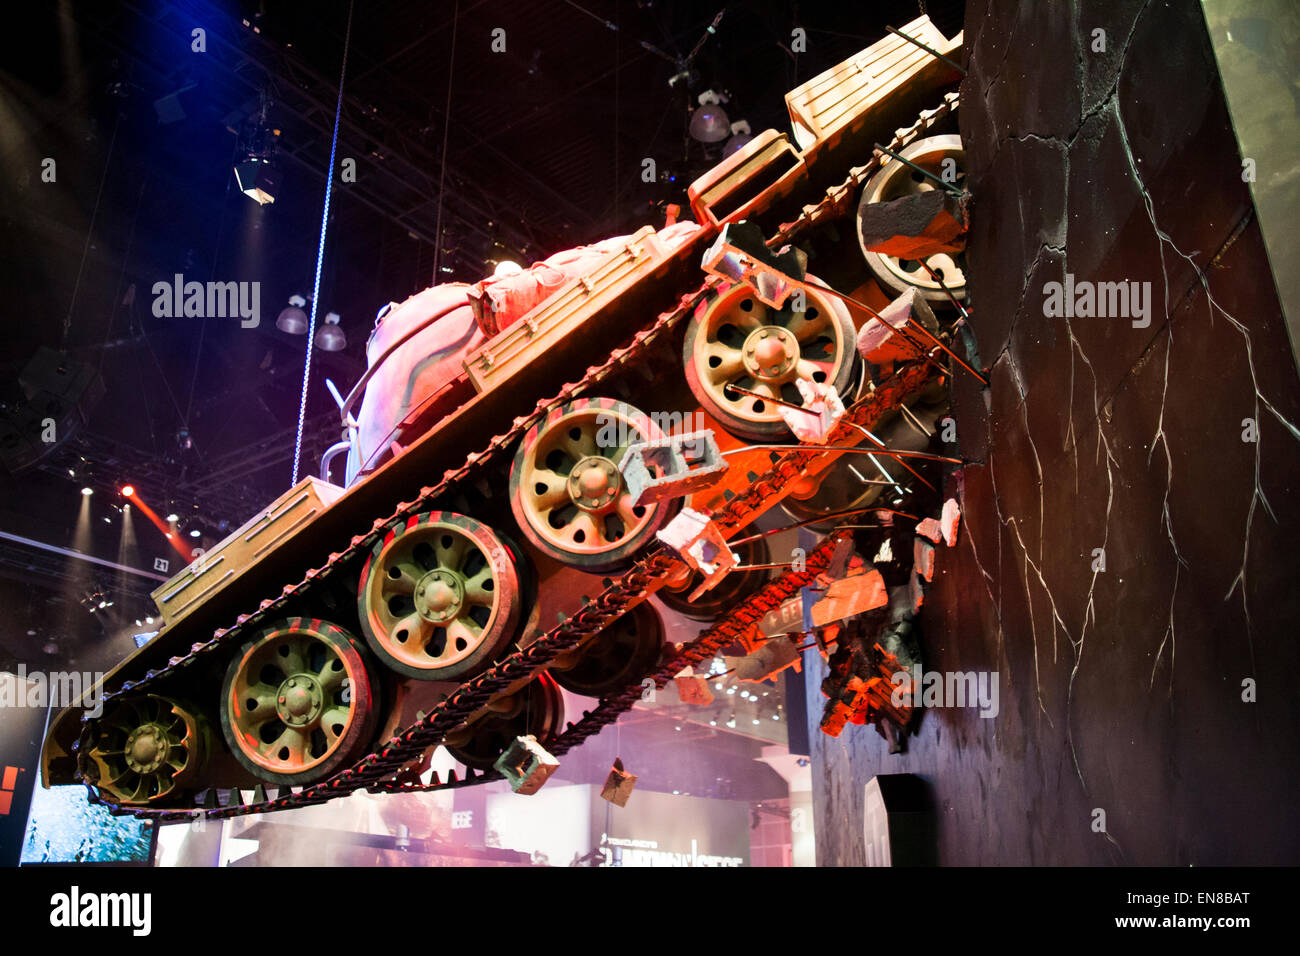 Une réplique grandeur nature d'une guerre mondiale 2 réservoir depuis le jeu vidéo World of Tanks est suspendu au plafond à l'E3 2014. Banque D'Images